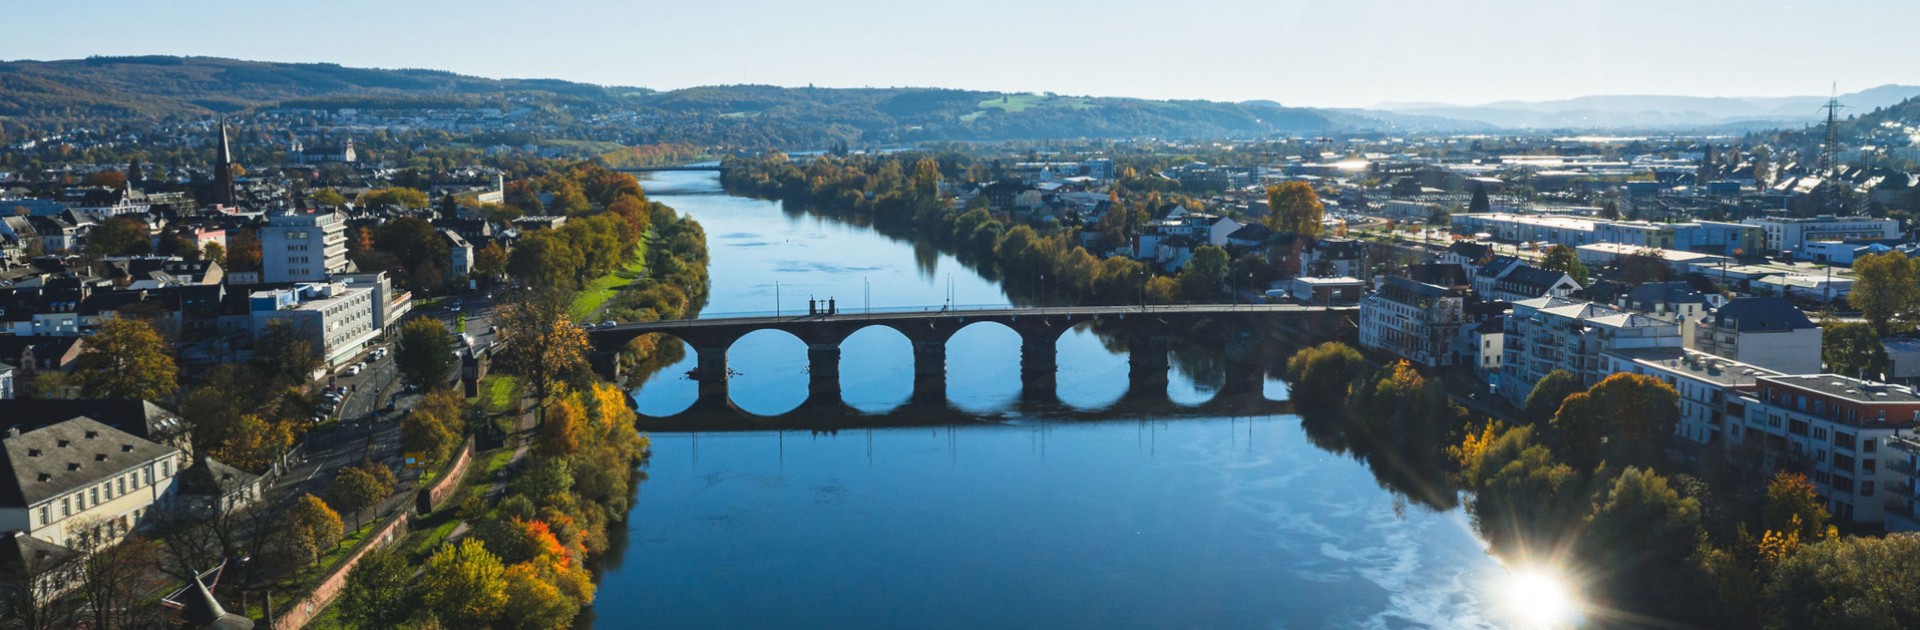 Luftbild Trier mit Mosel und Römerbrücke - © Victor Beusch / Trier Tourismus und Marketing